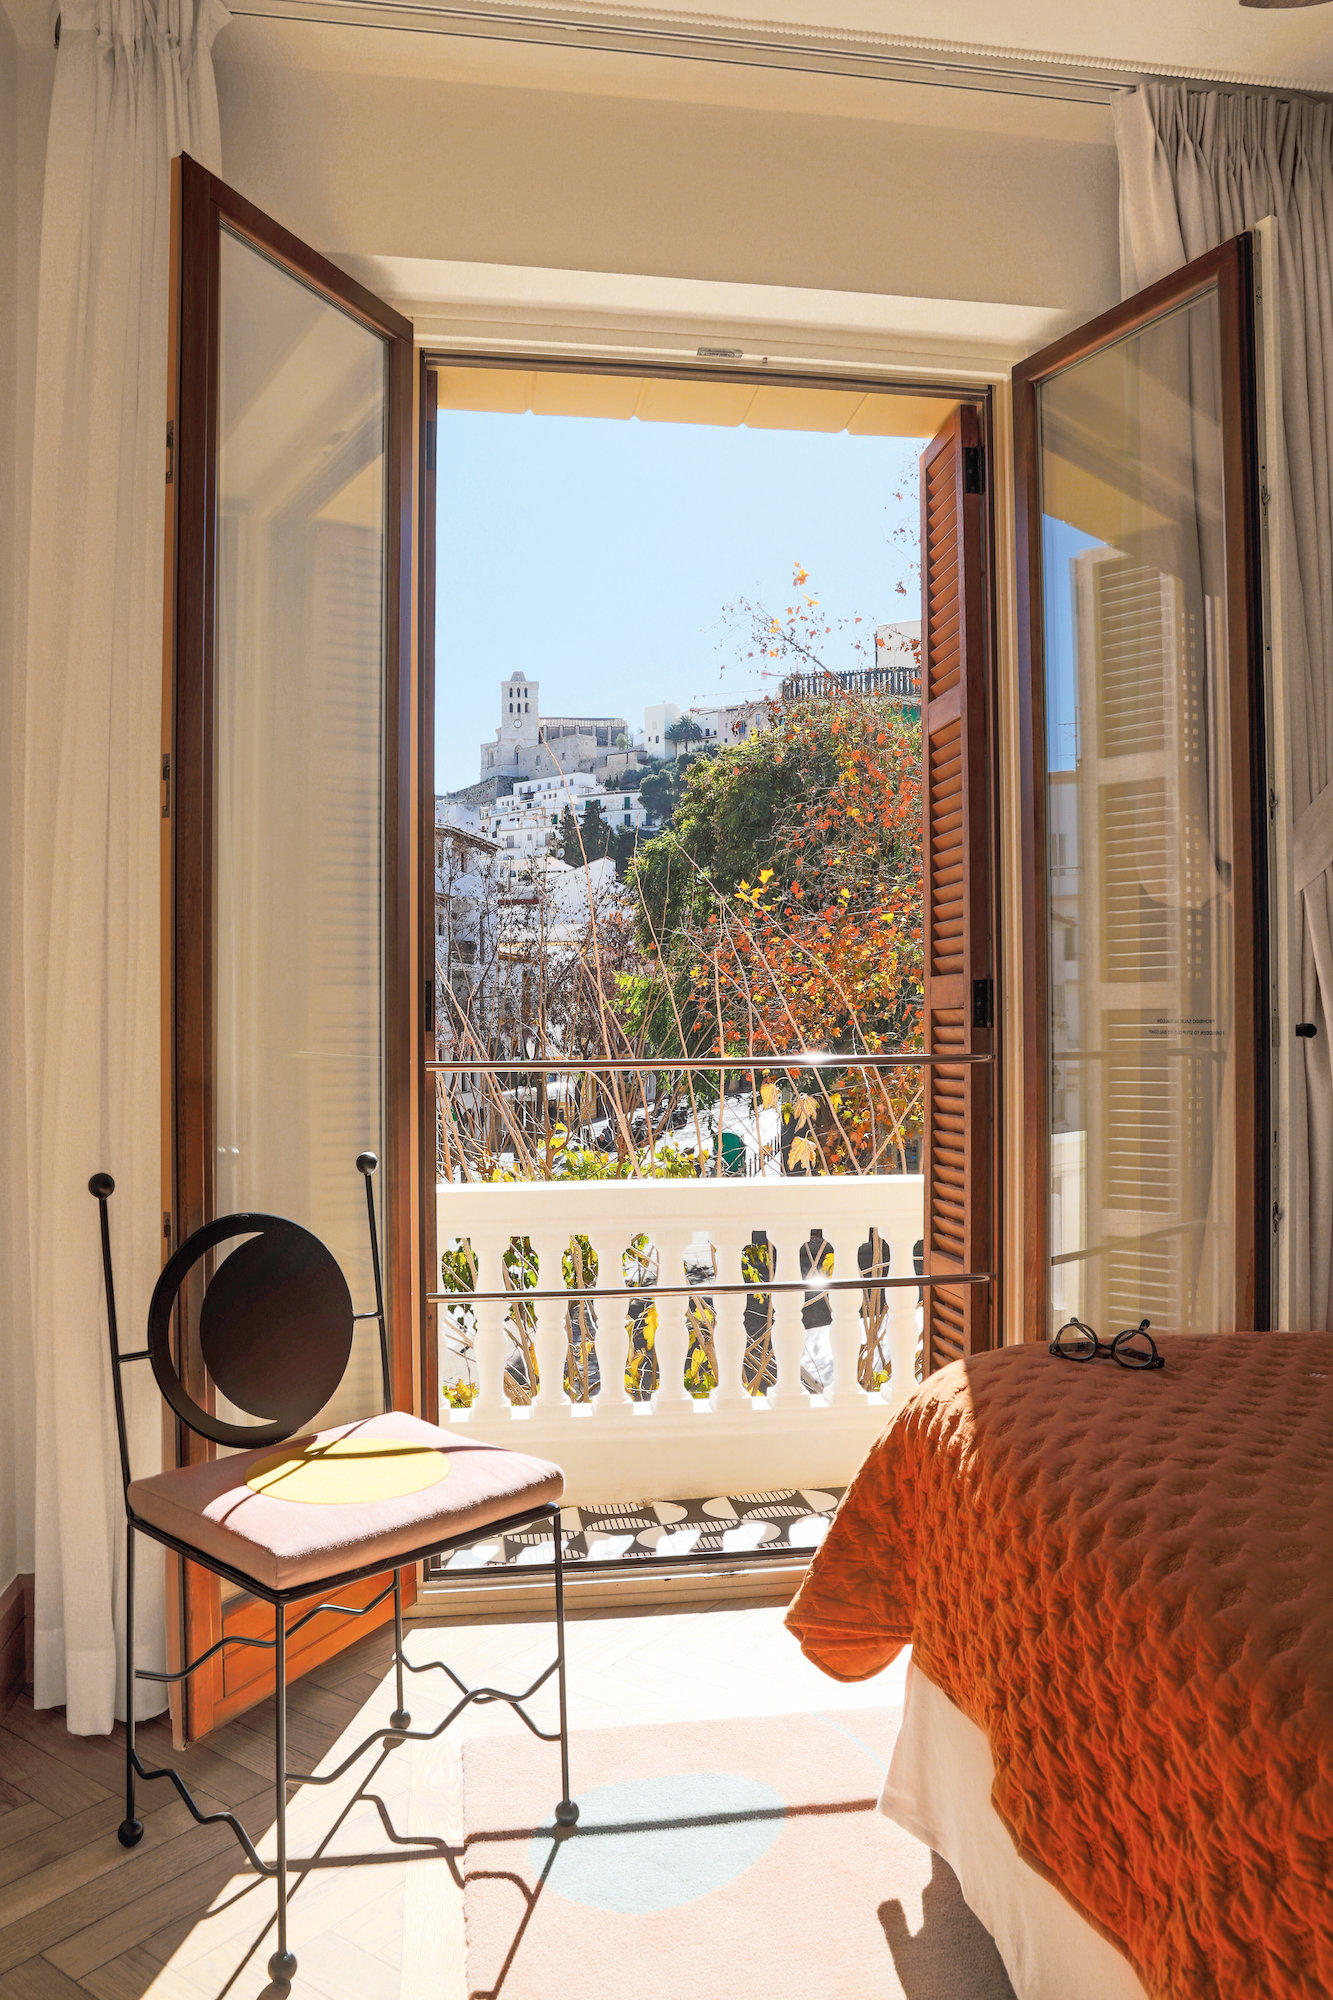 Abrir las ventanas antes de empezar es imprescindible, porque así evitaremos que se cargue el ambiente. En la imagen, Gran Hotel Montesol de Ibiza. 